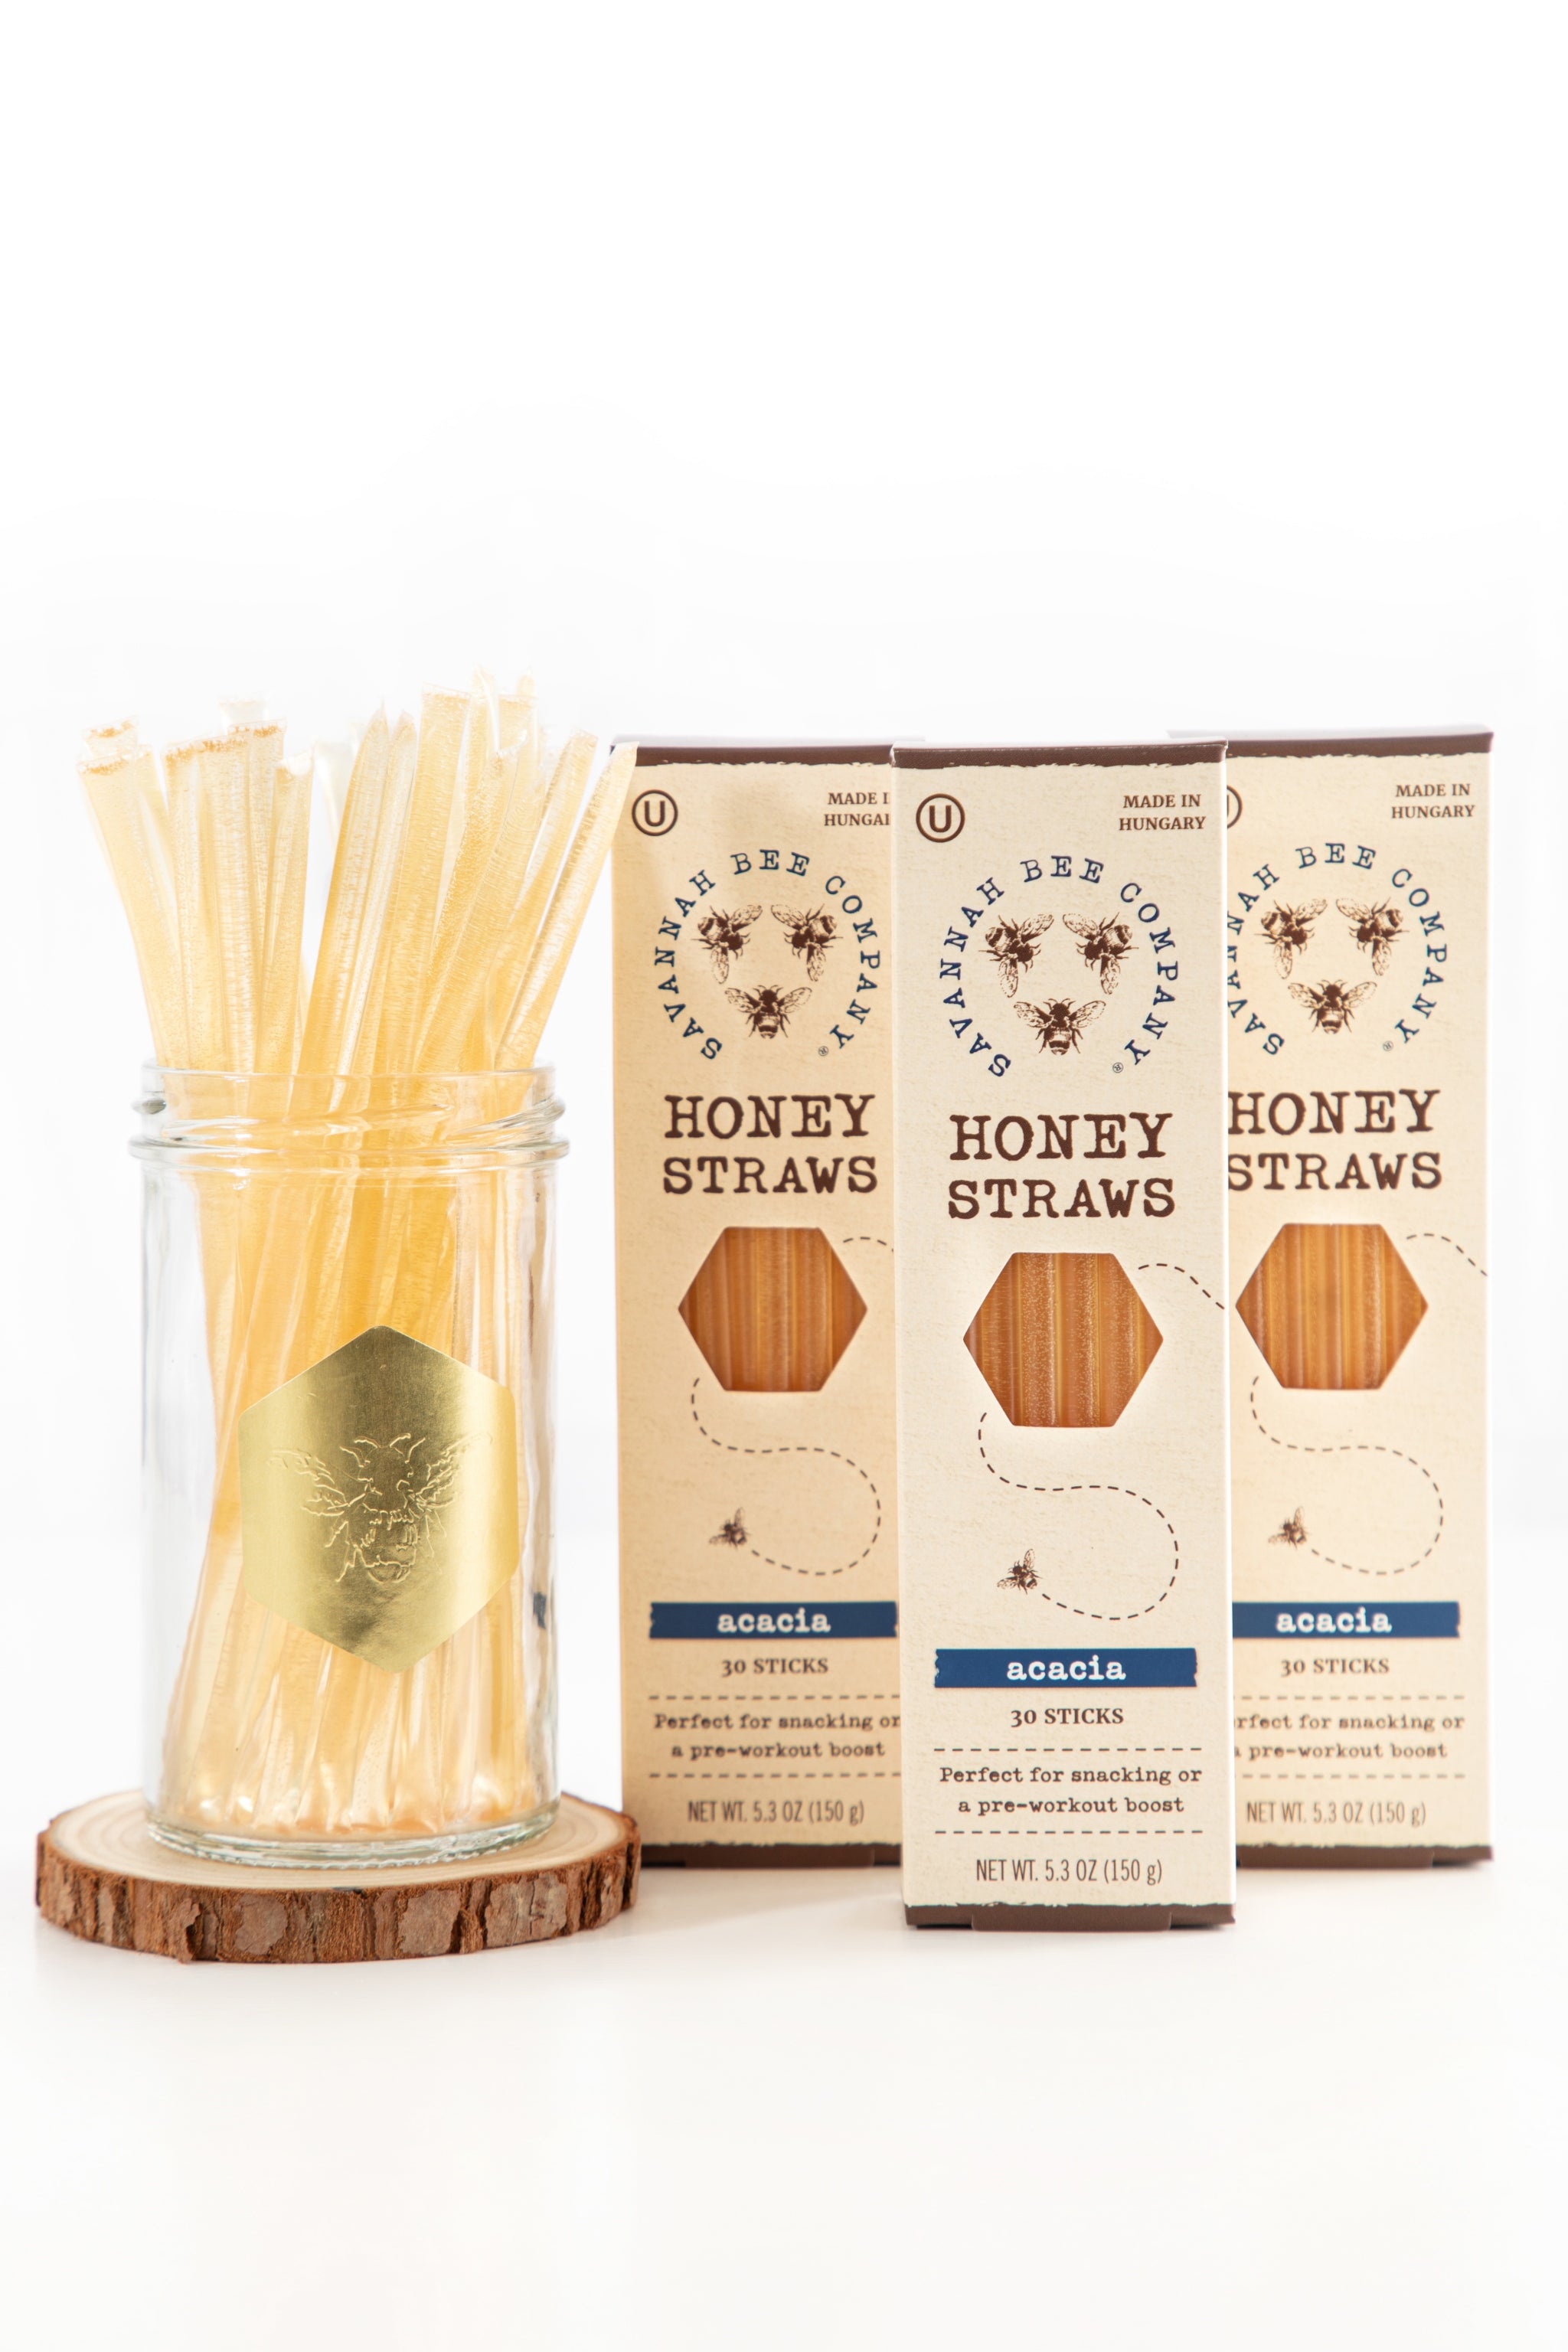 Honey Straws